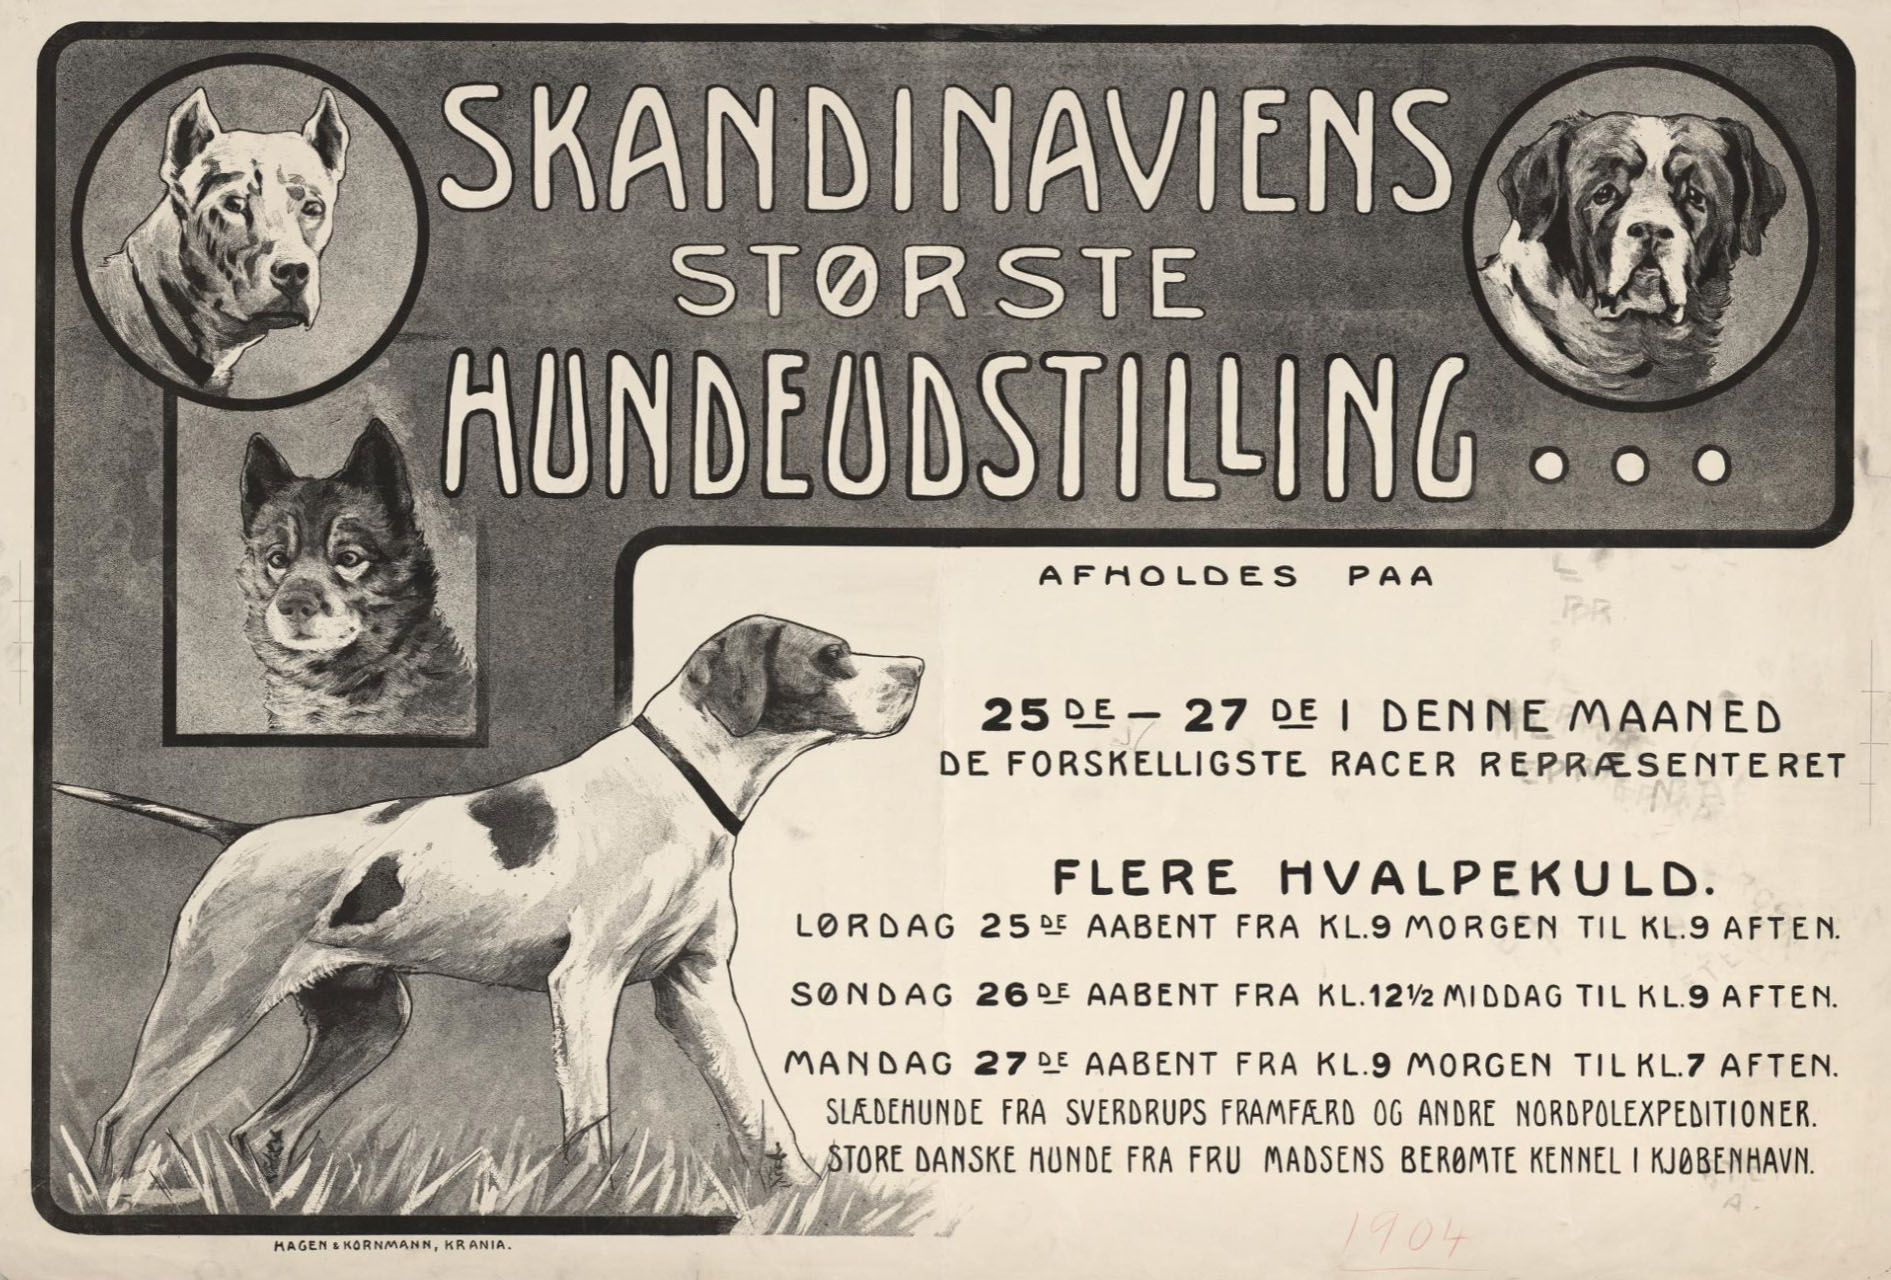 Svart/hvit peklameplakat for Skandinaviens største hundeutstilling med illustrasjoner av flere typer hunder